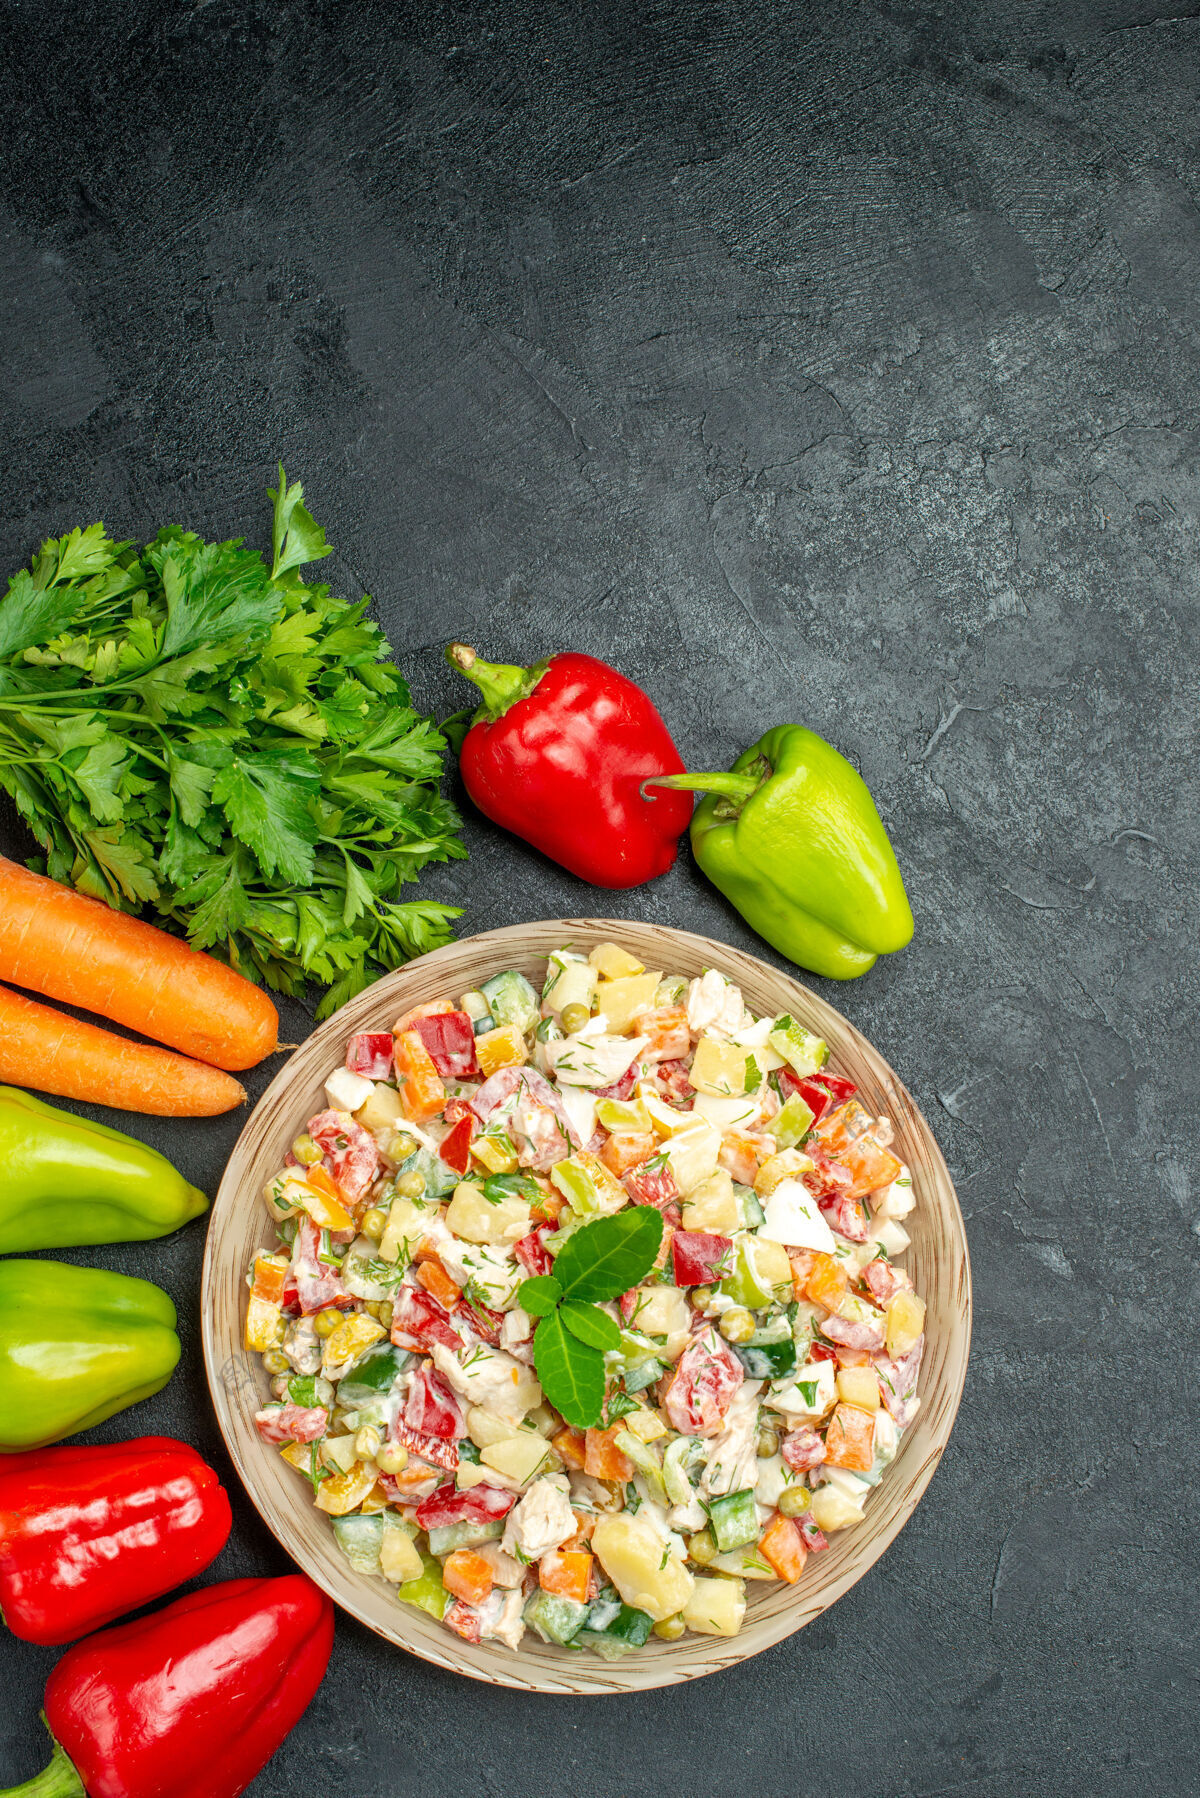 蔬菜深灰色桌子上一碗蔬菜沙拉的顶视图 旁边有胡萝卜 蔬菜和甜椒甜椒甜椒午餐